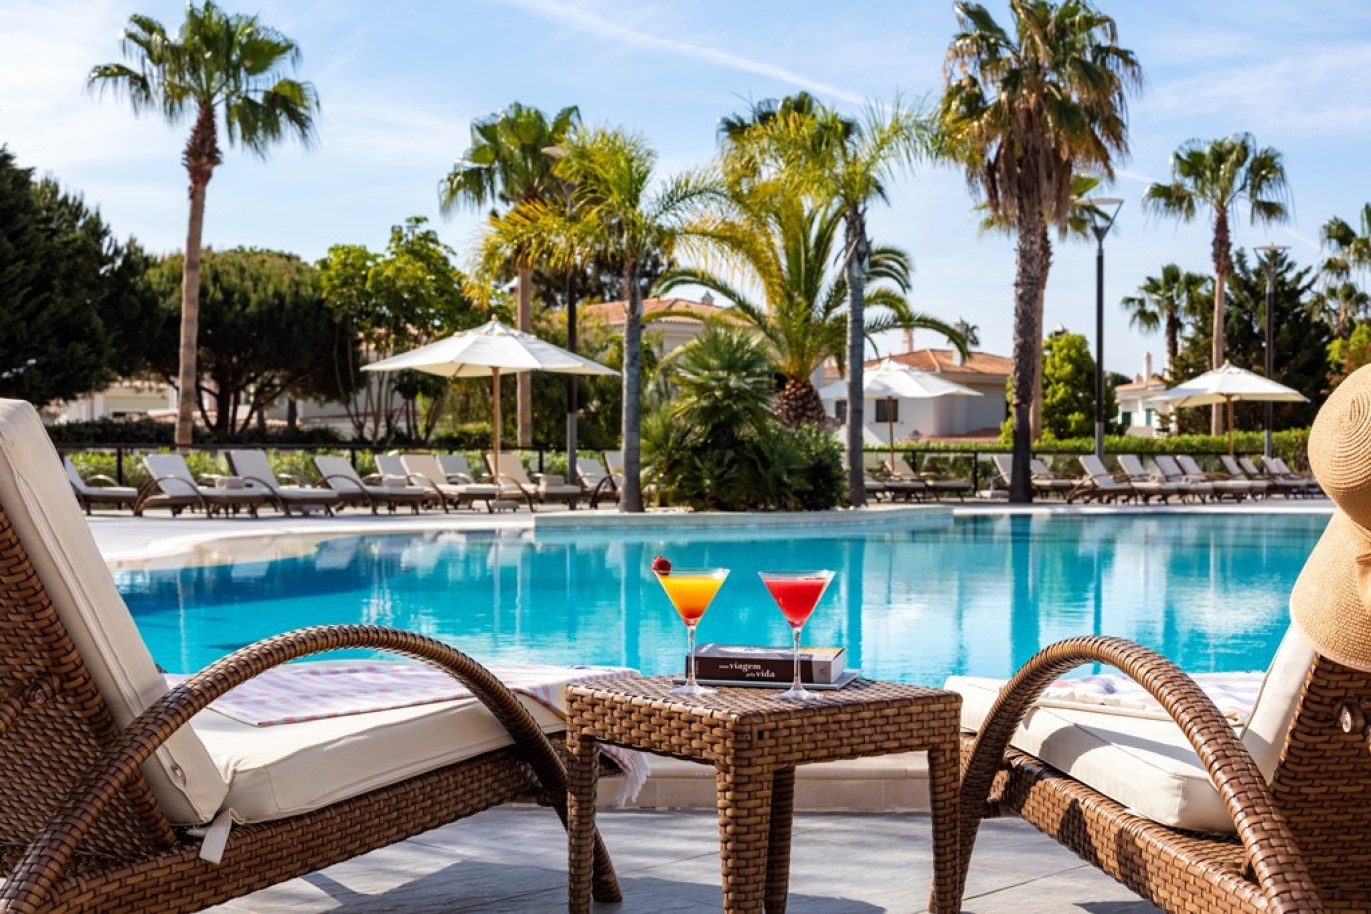 Apartamento, 2 quartos, piscina, para venda na Quinta do Lago, Algarve_263436